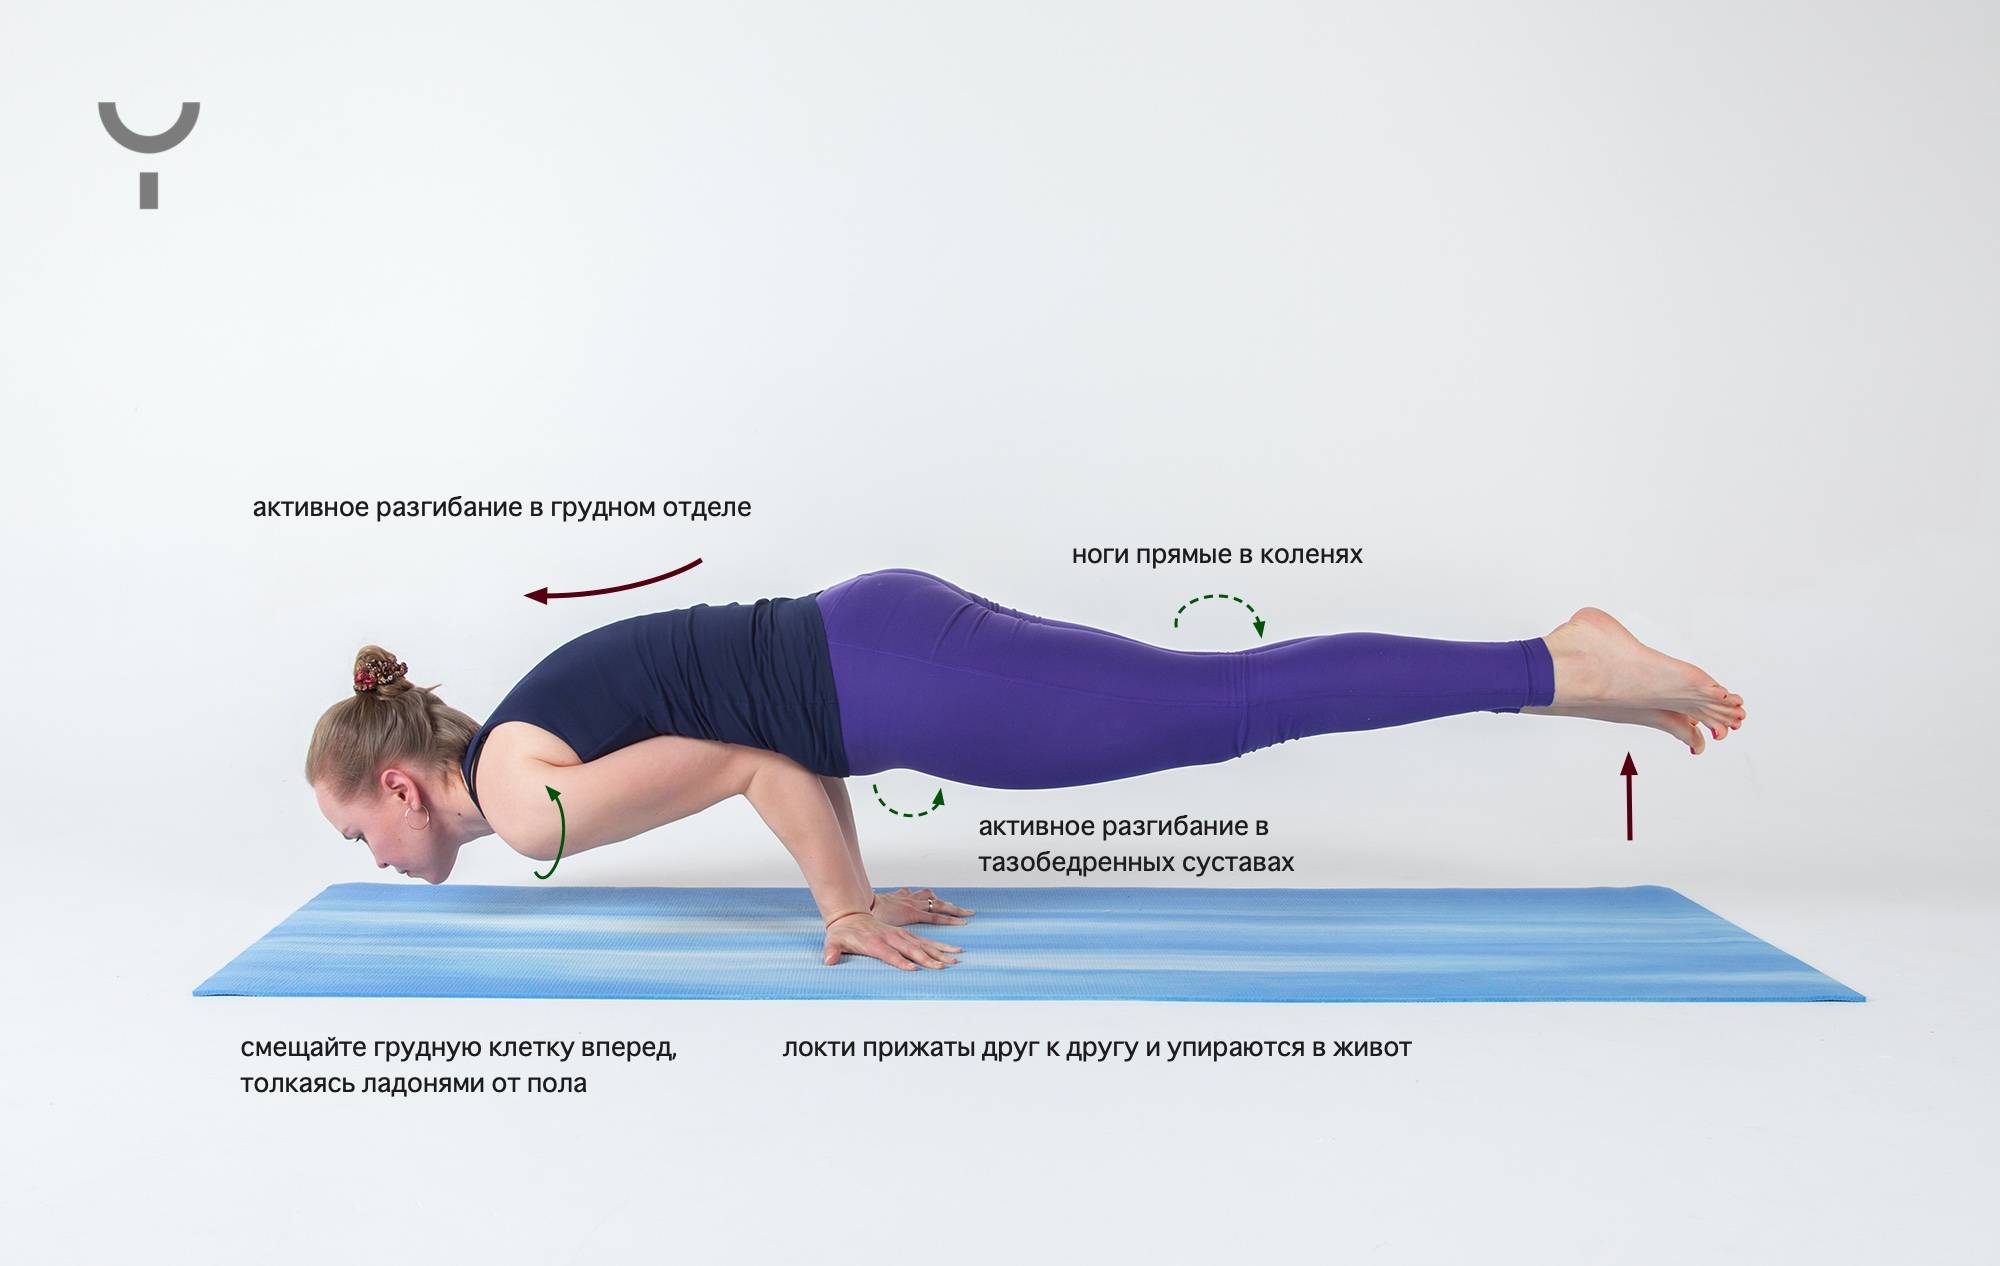 Халасана: поза плуга в йоге и ее подробная техника выполнения, а также польза и противопоказания